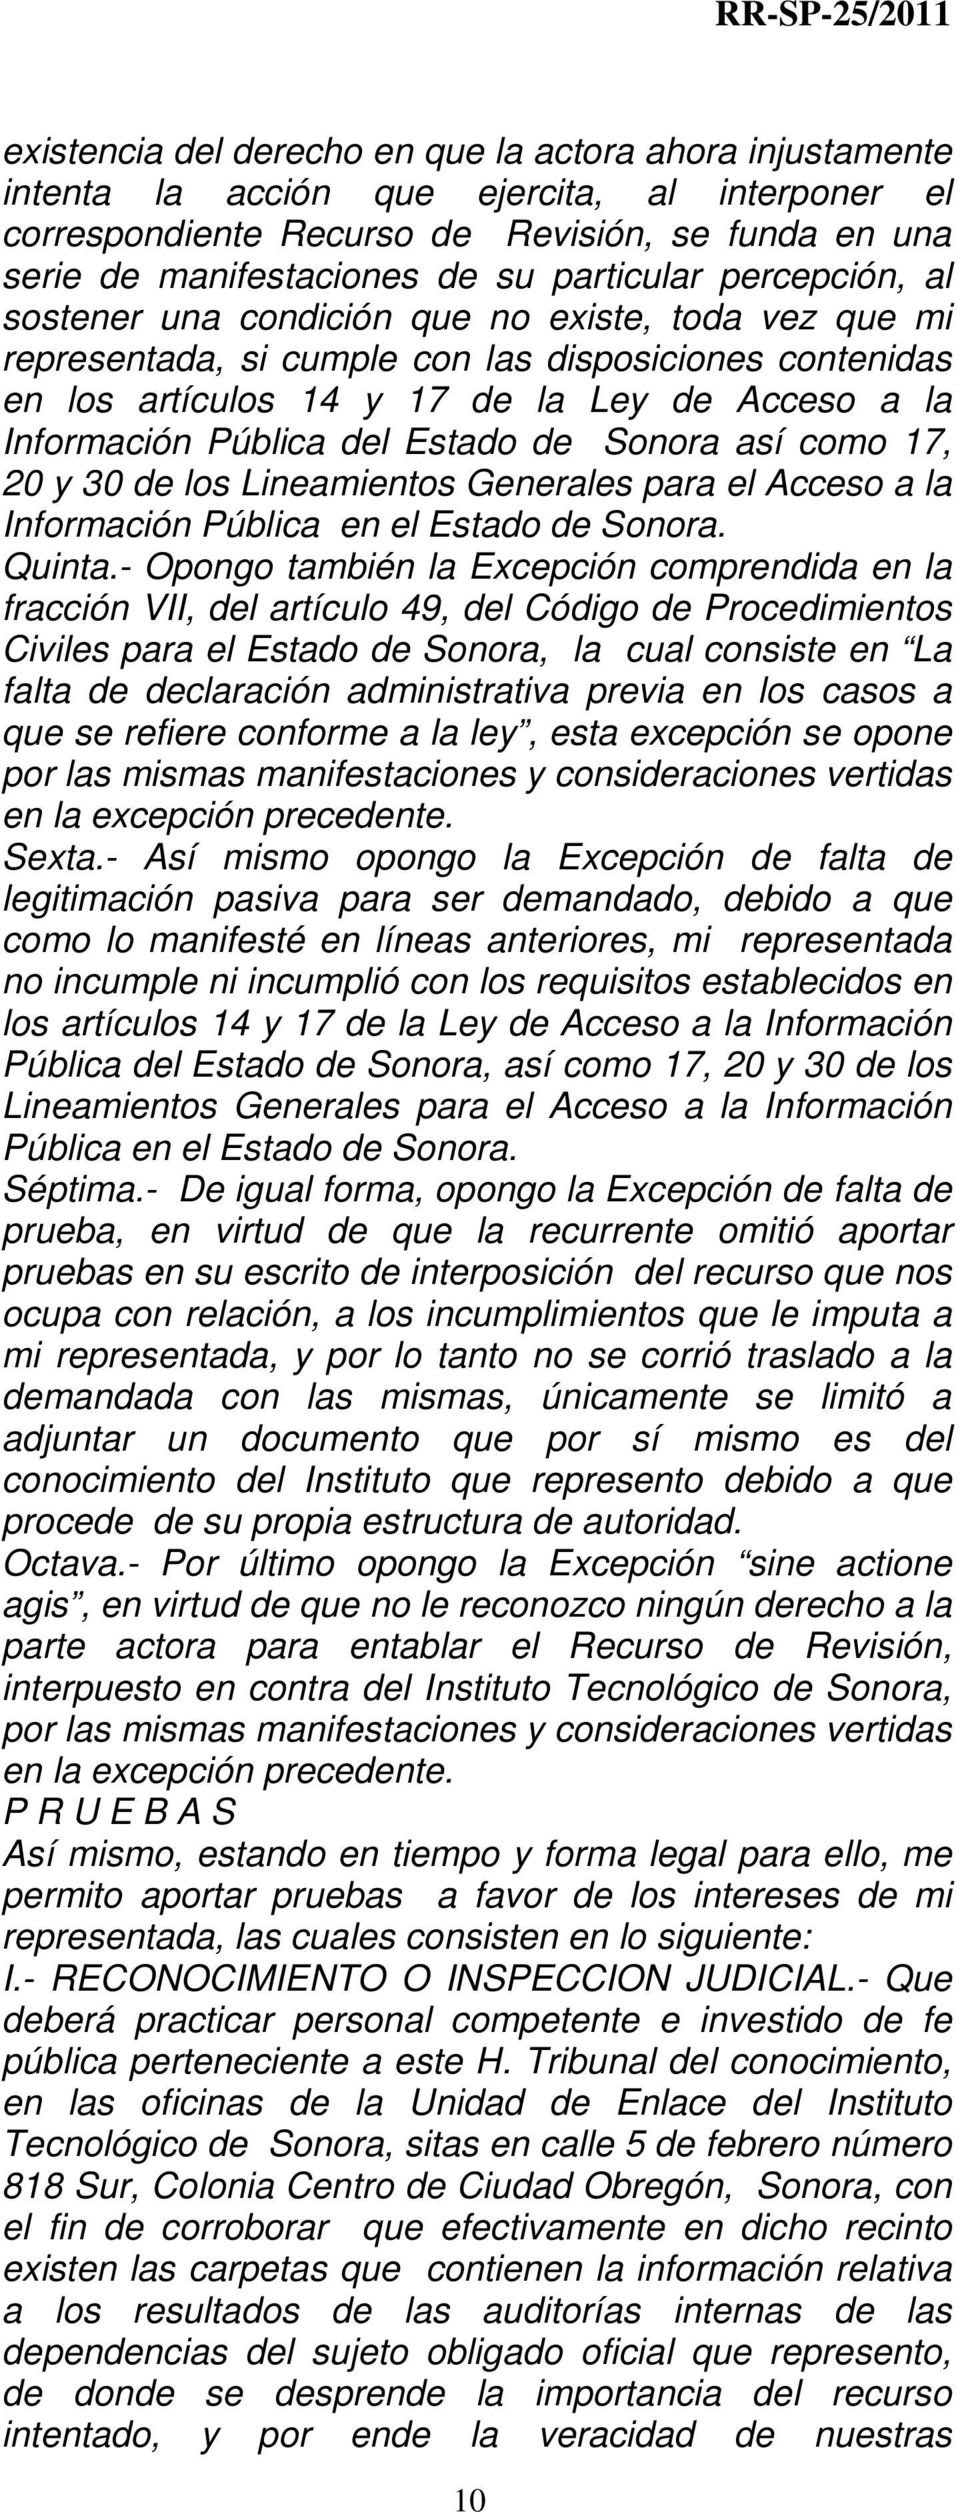 Pública del Estado de Sonora así como 17, 20 y 30 de los Lineamientos Generales para el Acceso a la Información Pública en el Estado de Sonora. Quinta.